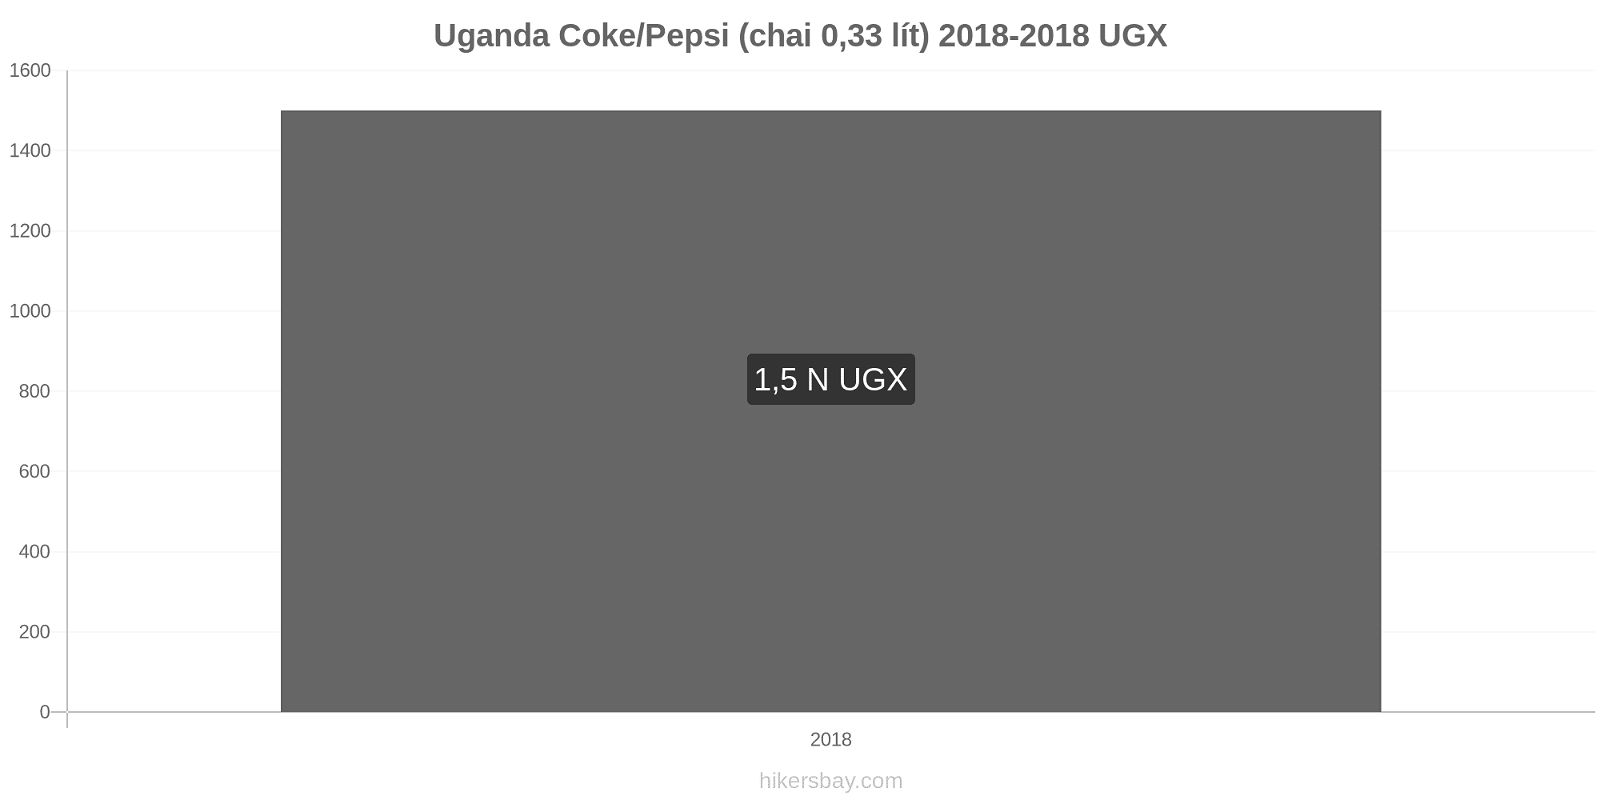 Uganda thay đổi giá cả Coca-Cola/Pepsi (chai 0.33 lít) hikersbay.com